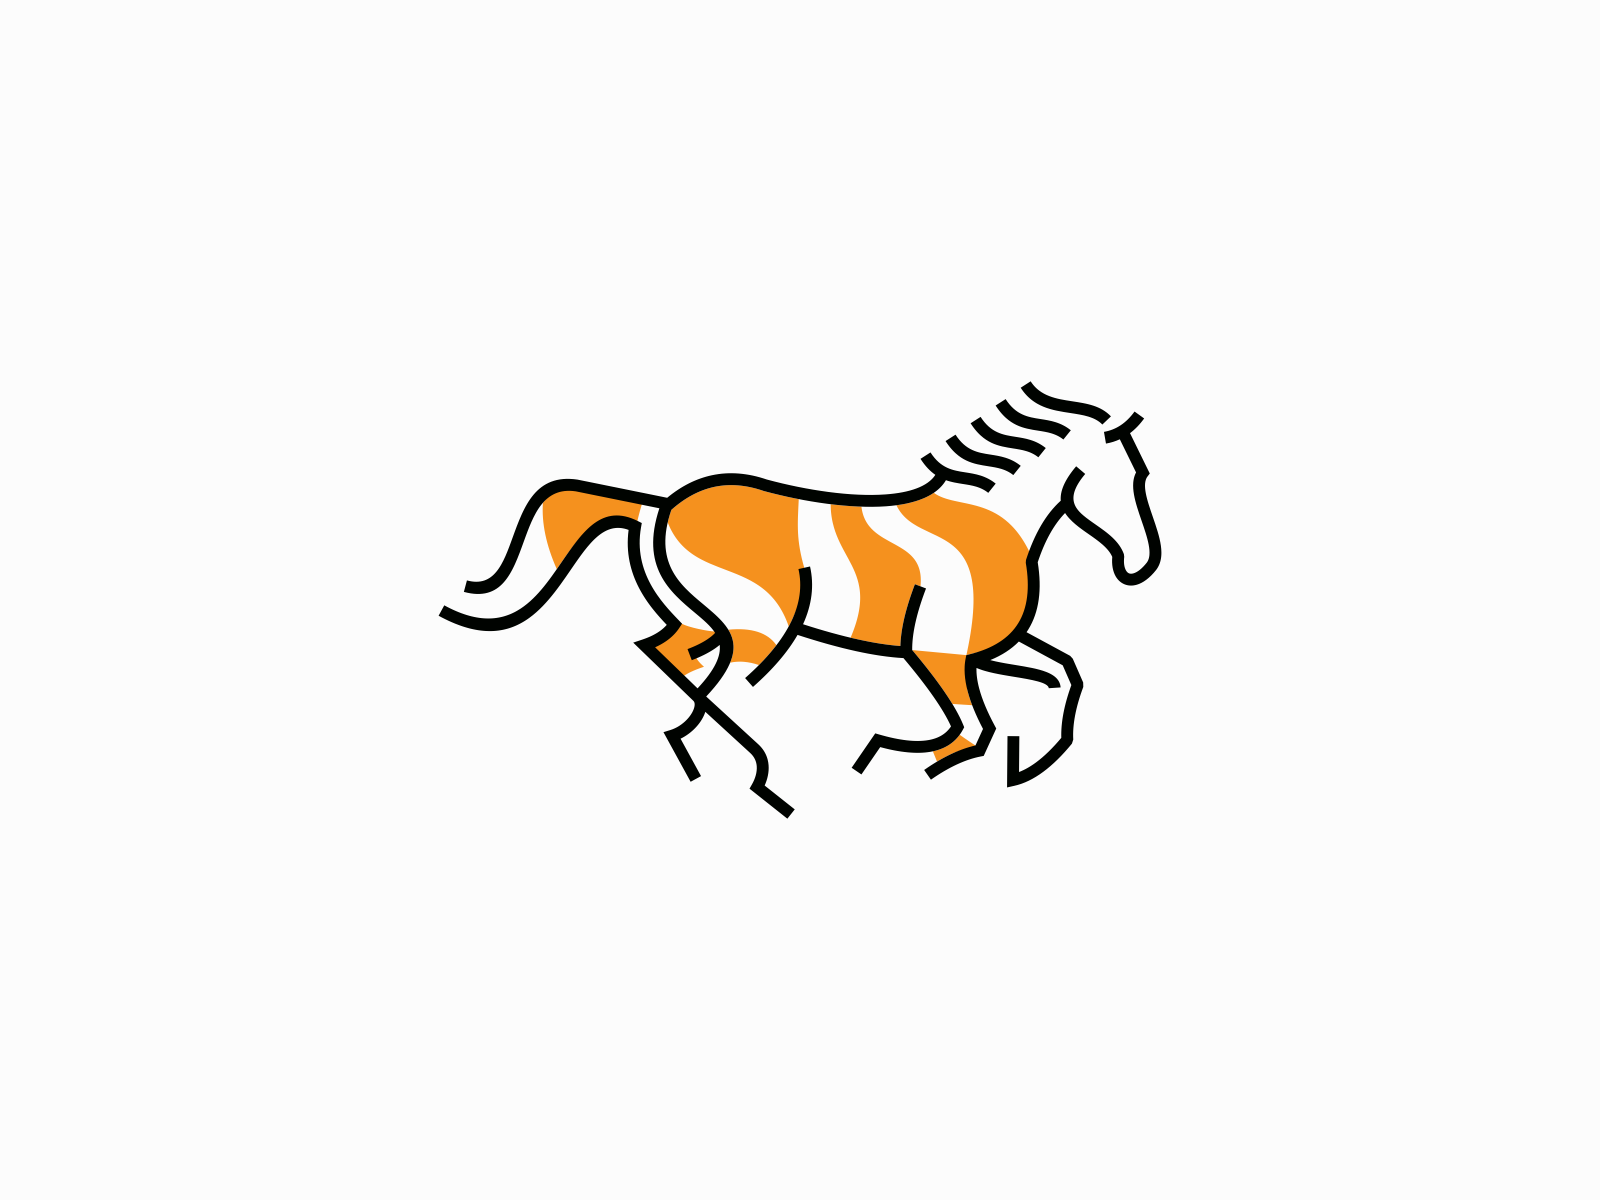 Running horse logo deisgn template | PosterMyWall